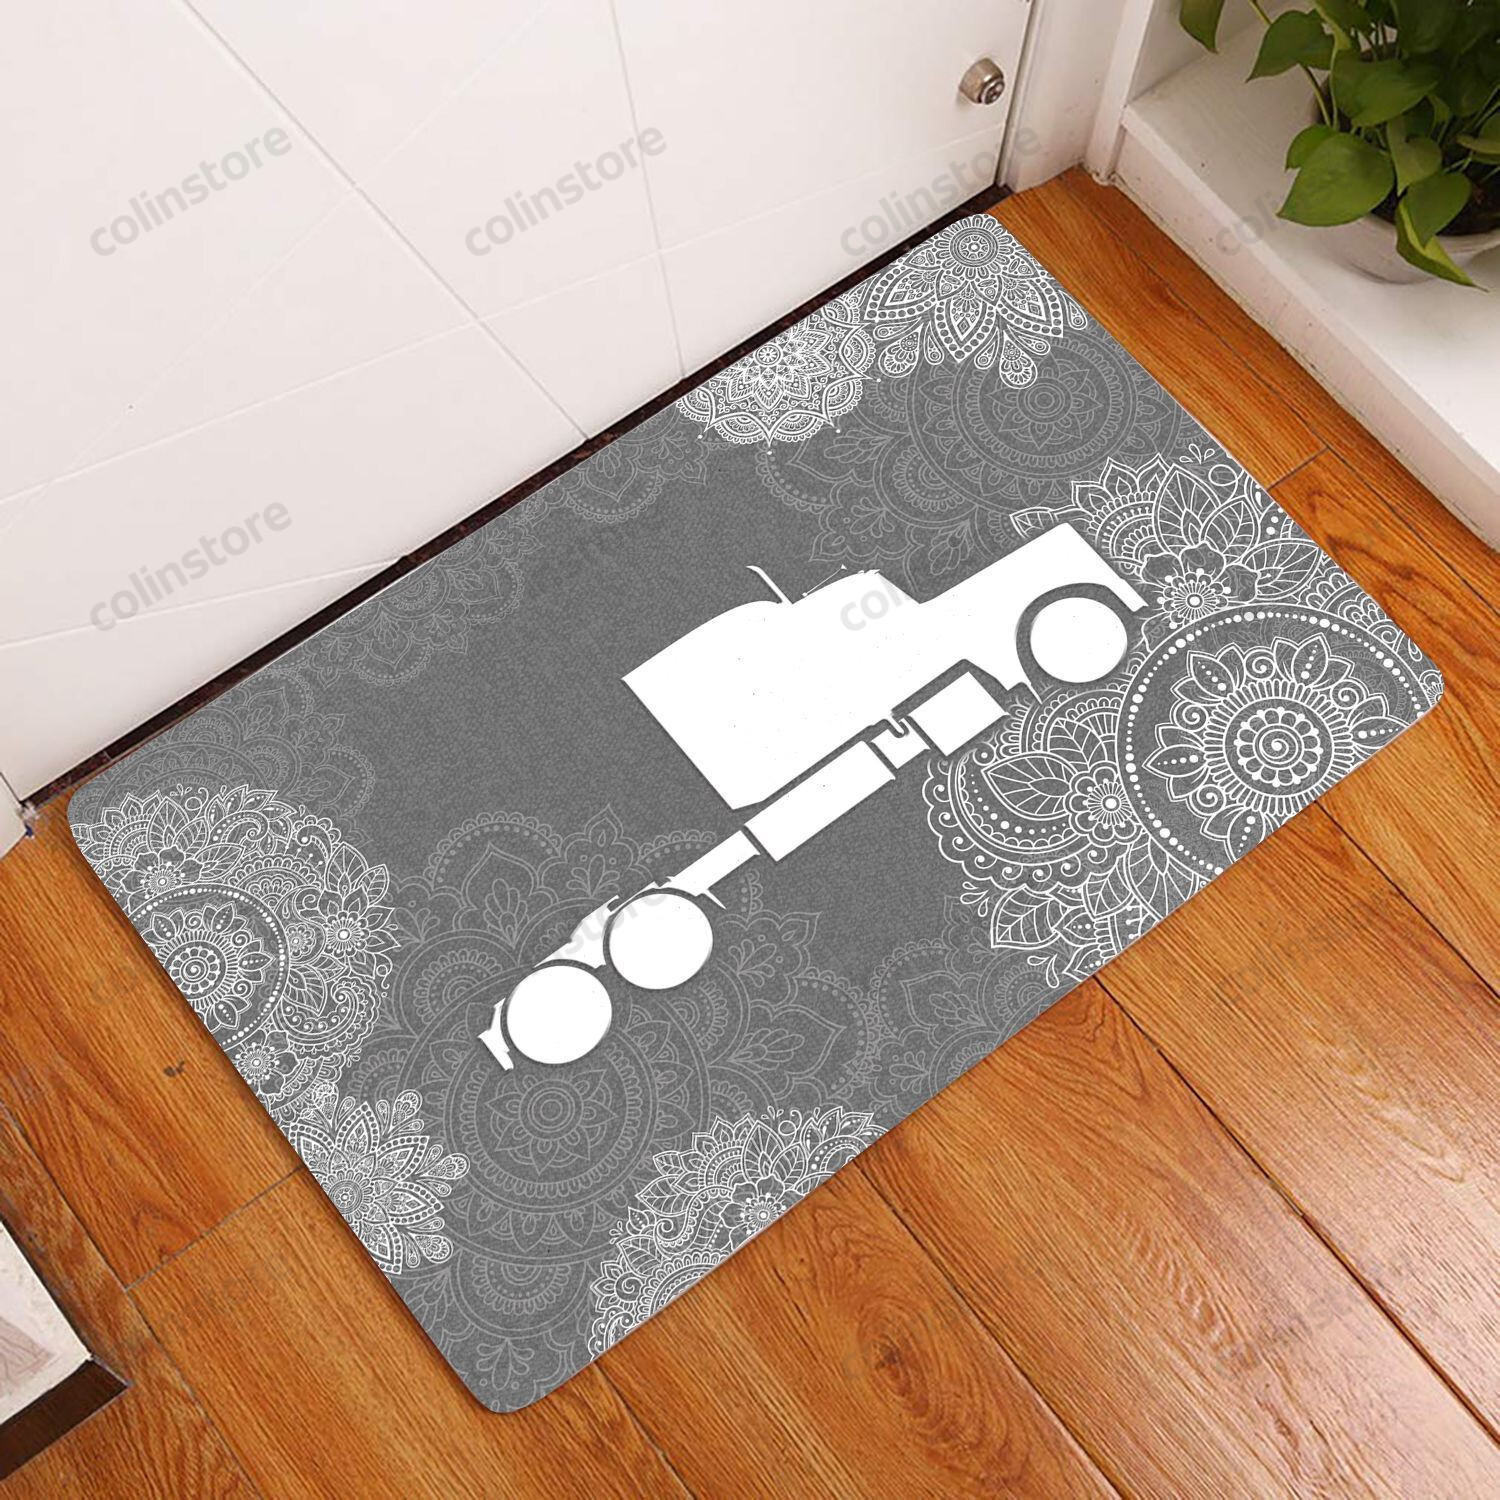 Amazing Trucker Doormat Welcome Mat